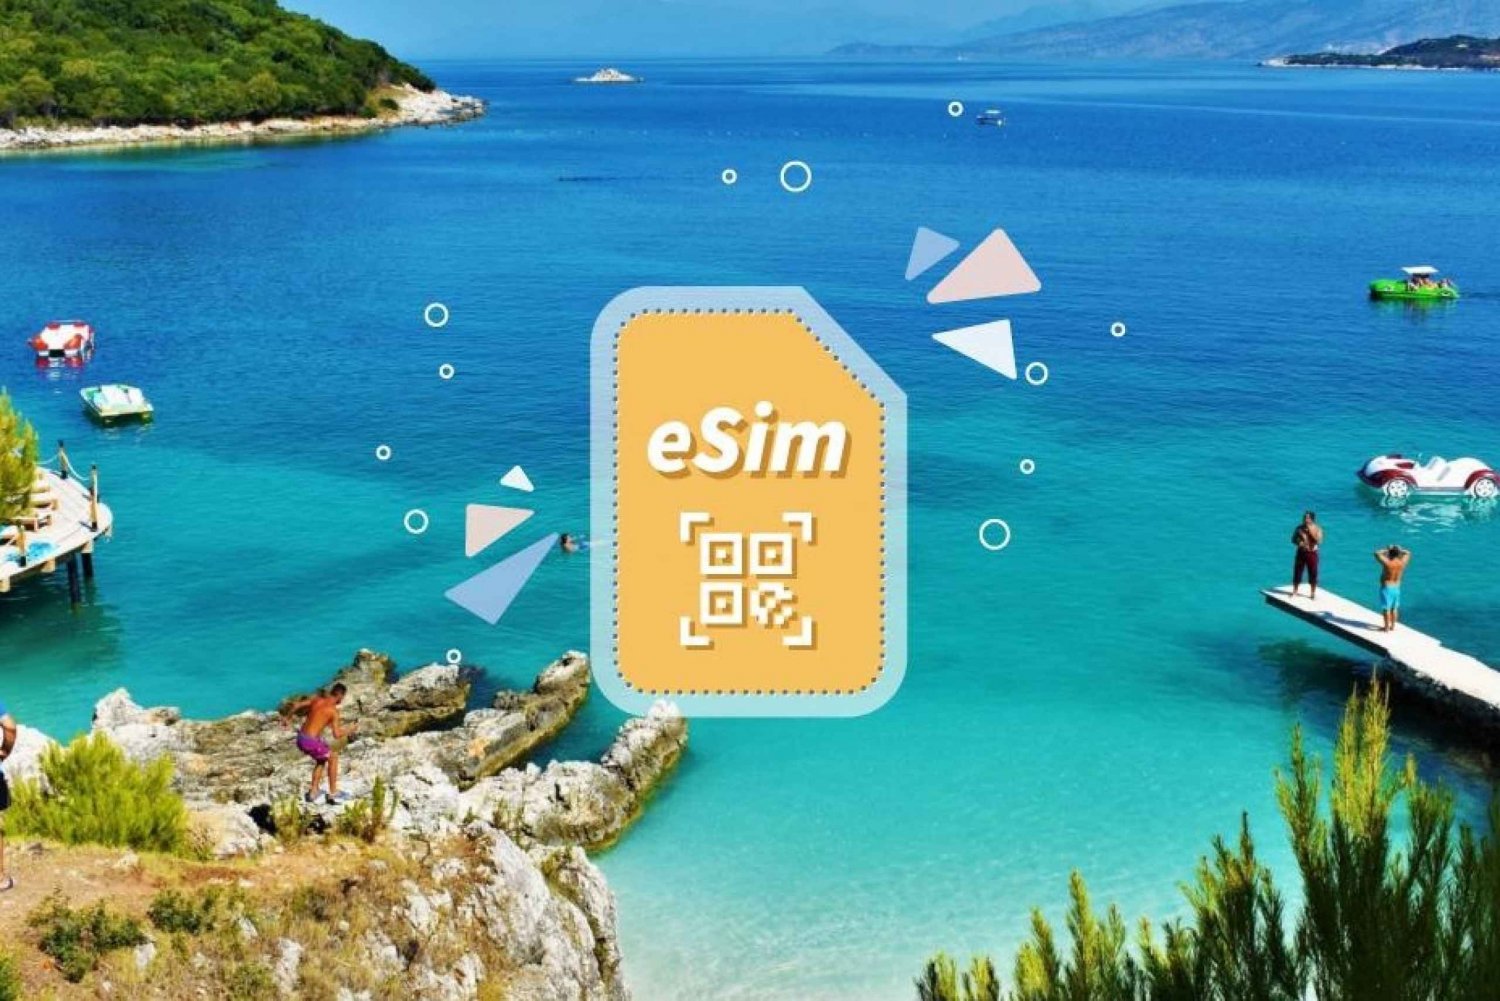 Albania/Europa: eSim Mobile Data Plan